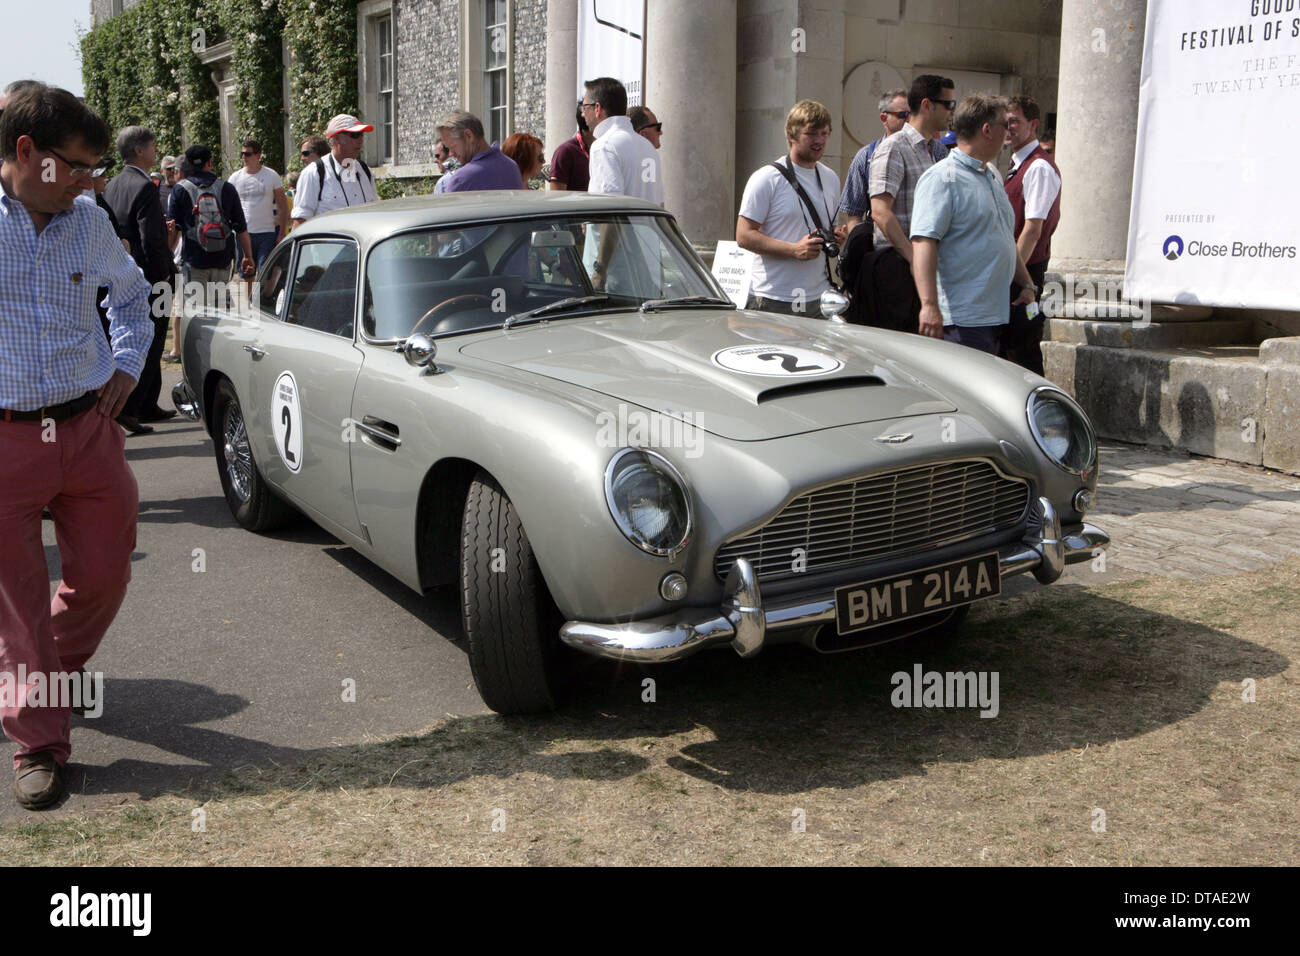 007 James Bond 1963 Aston Martin DB5 lenkt die Aufmerksamkeit beim Goodwood Festival of Speed 2013. Stockfoto